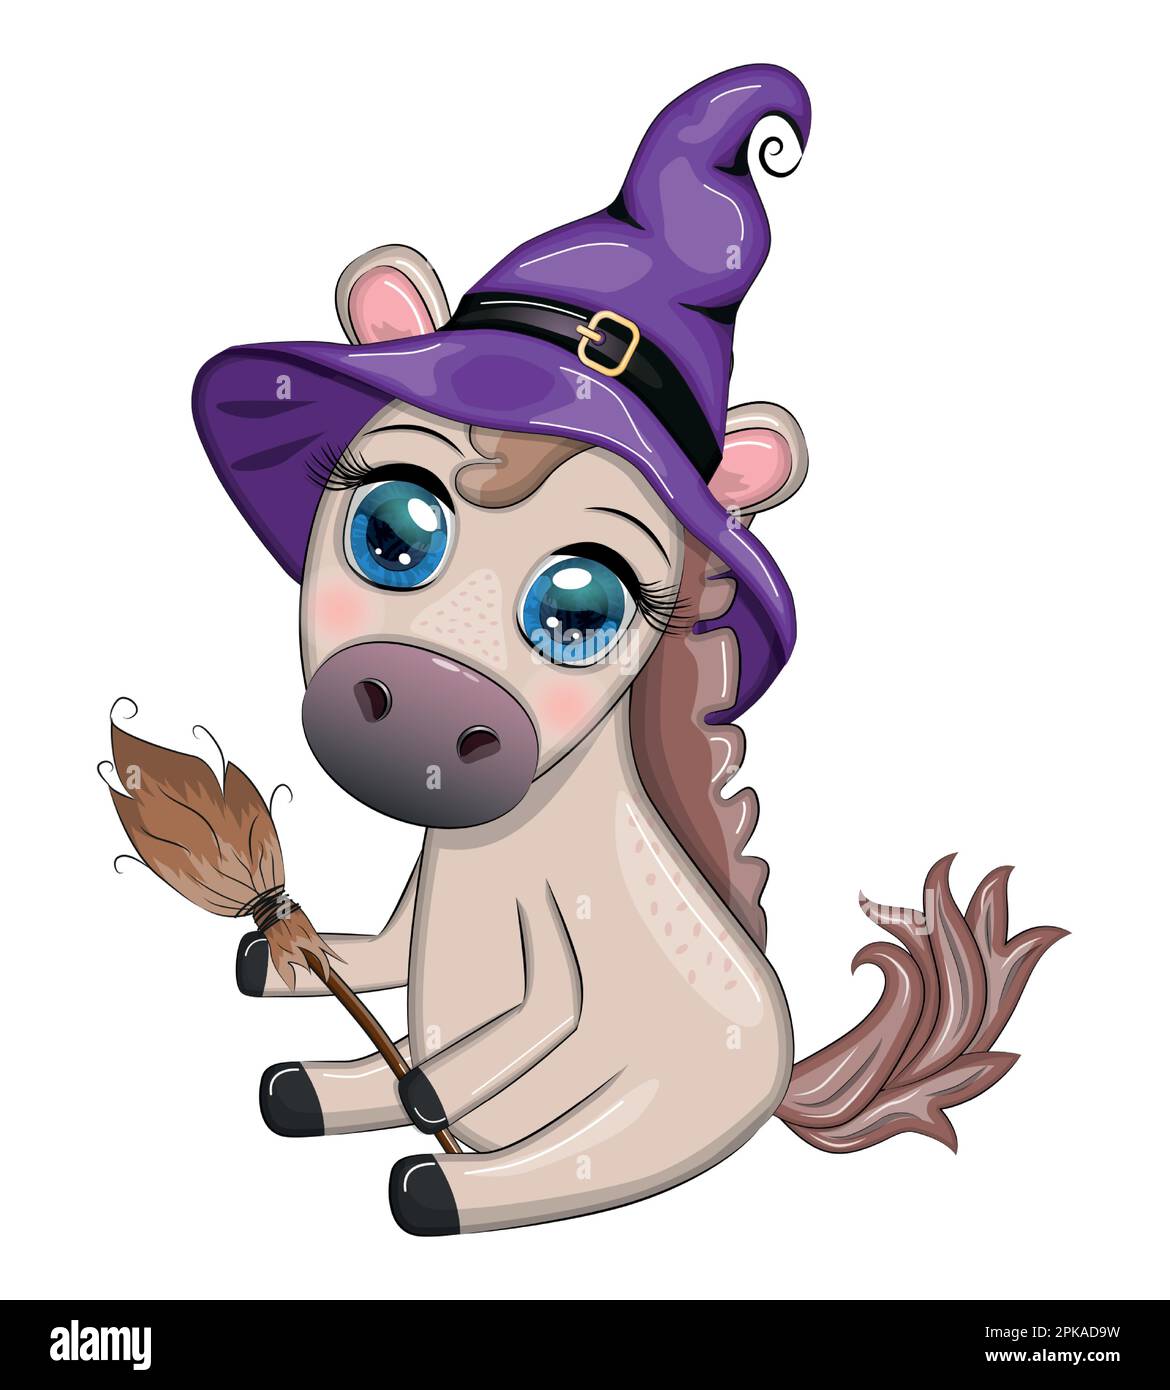 Süßes Pferd, Pony in einem lila Hexenhut, mit Besen, Kürbis, Trank.  Halloween-Karte für die Feiertage Stock-Vektorgrafik - Alamy